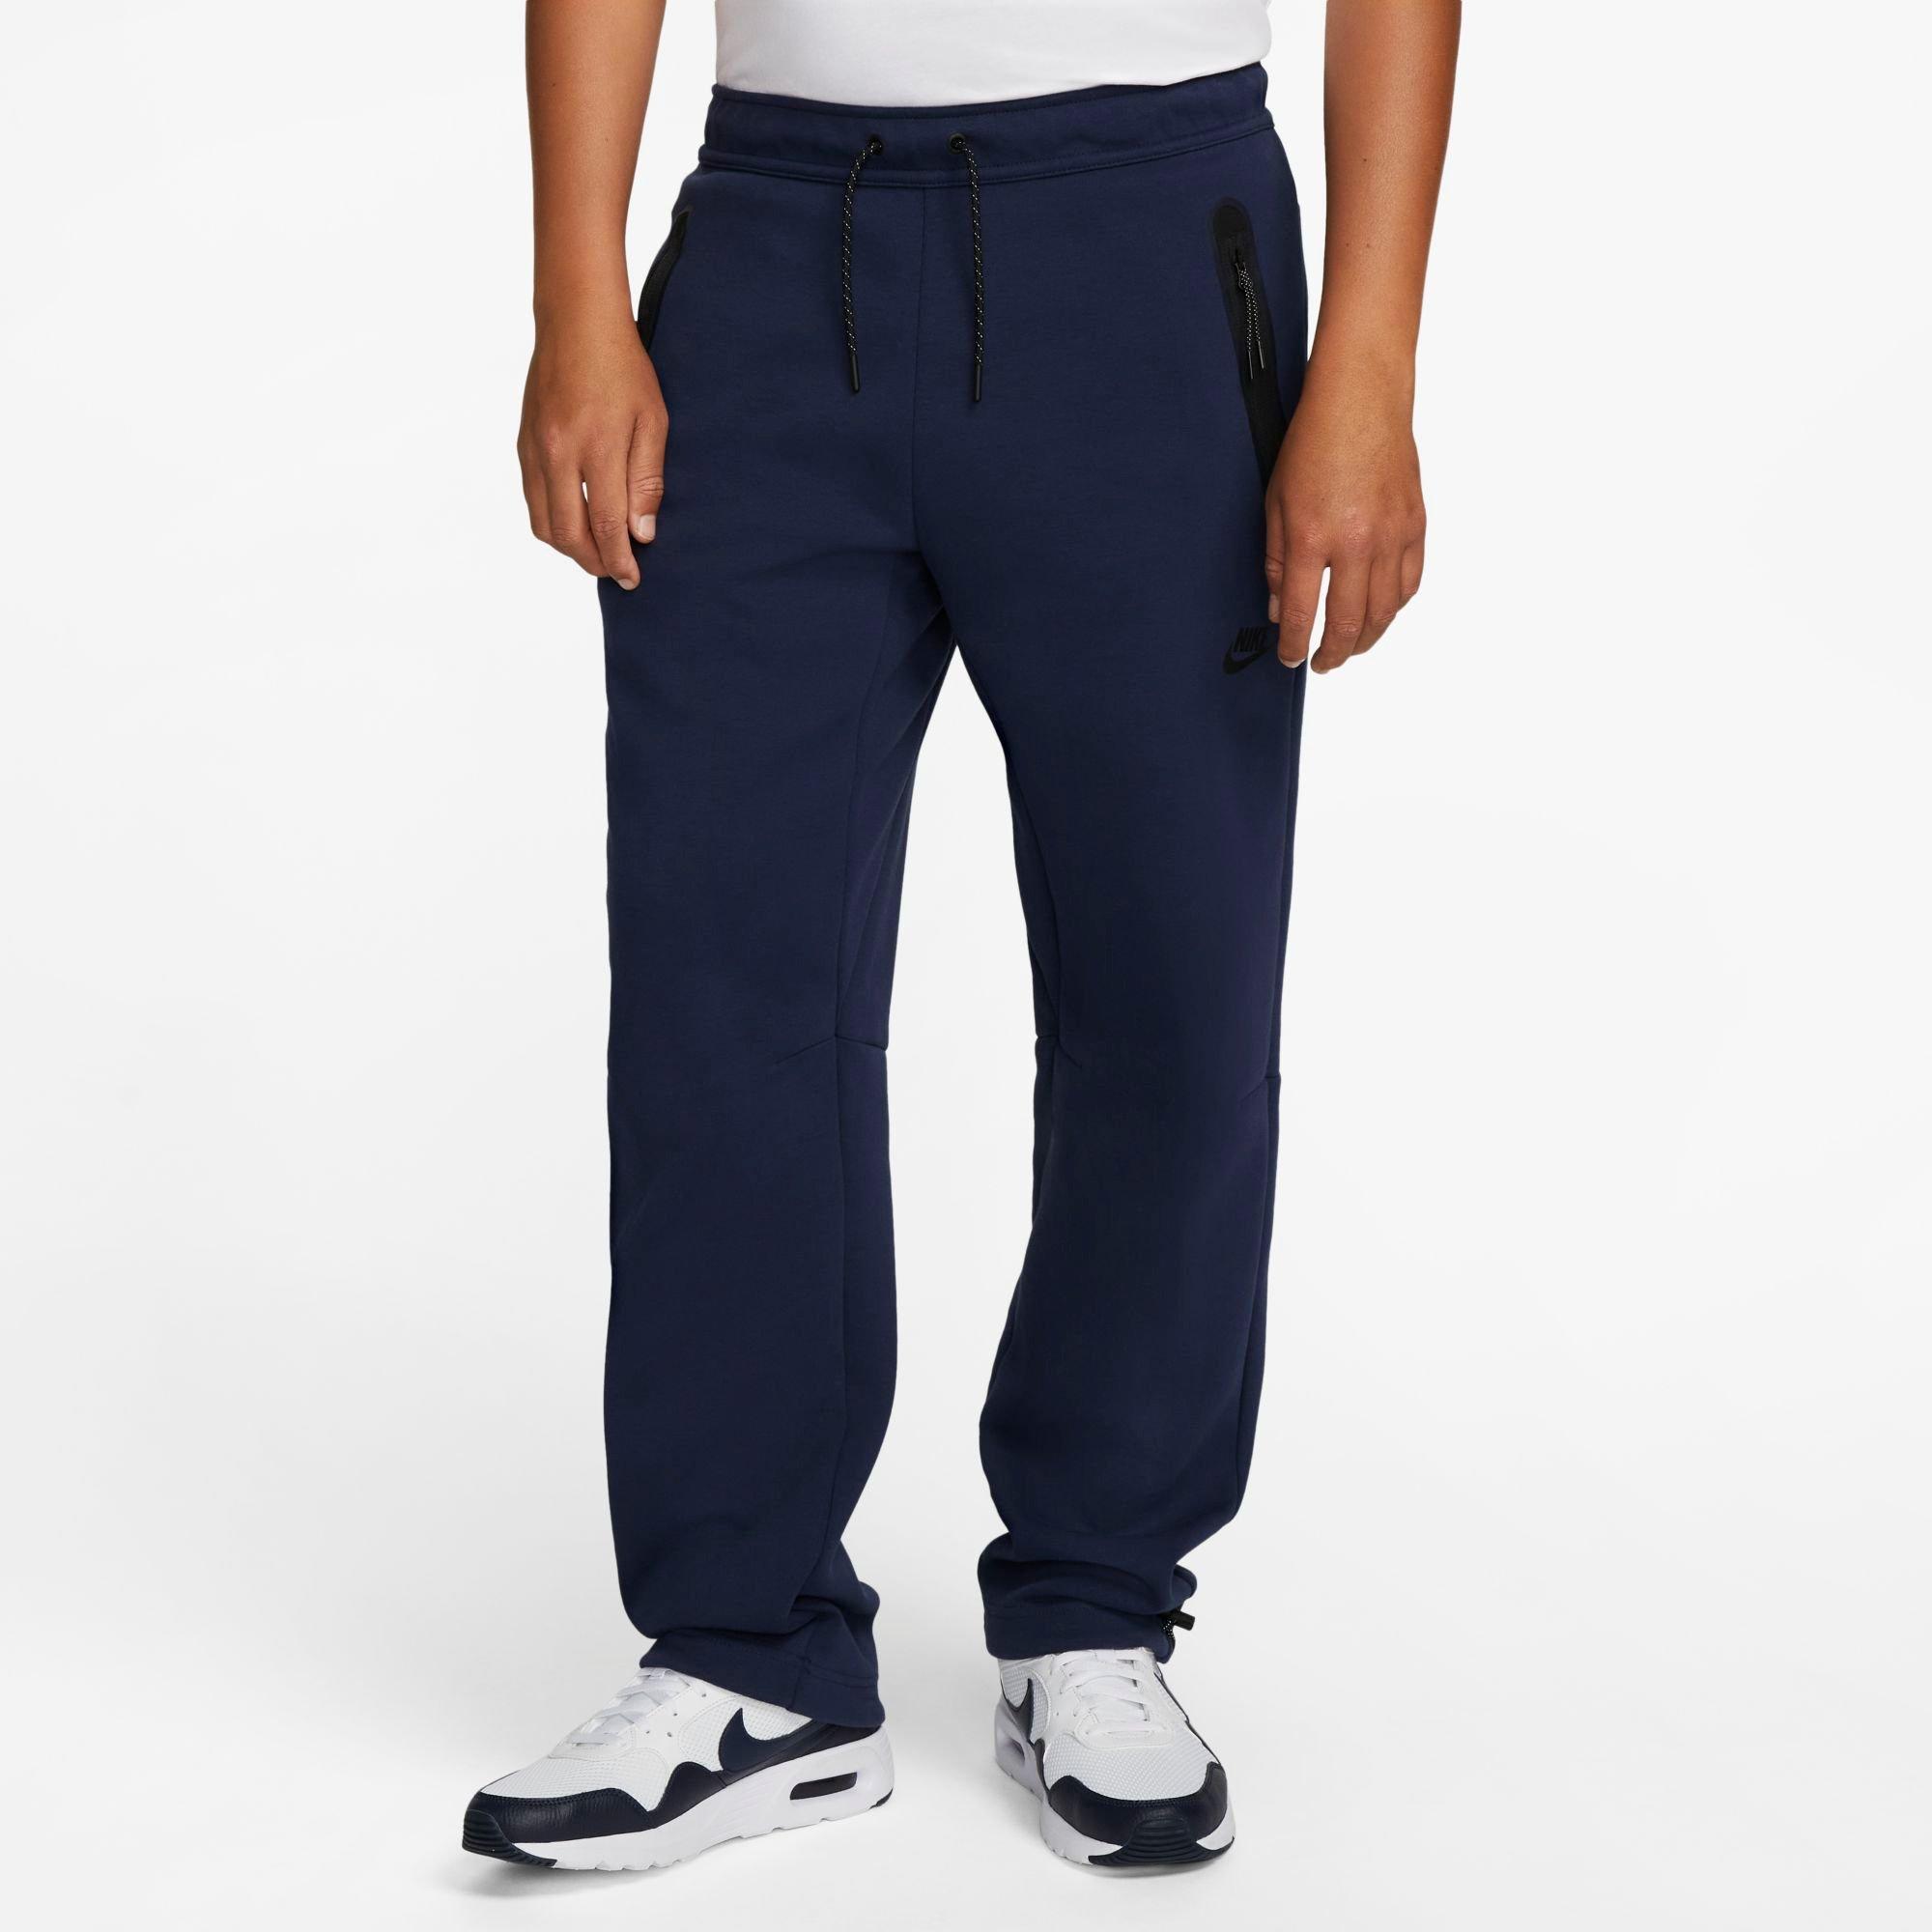  Nike Sportswear Men's Straight Leg Tech Fleece Pants